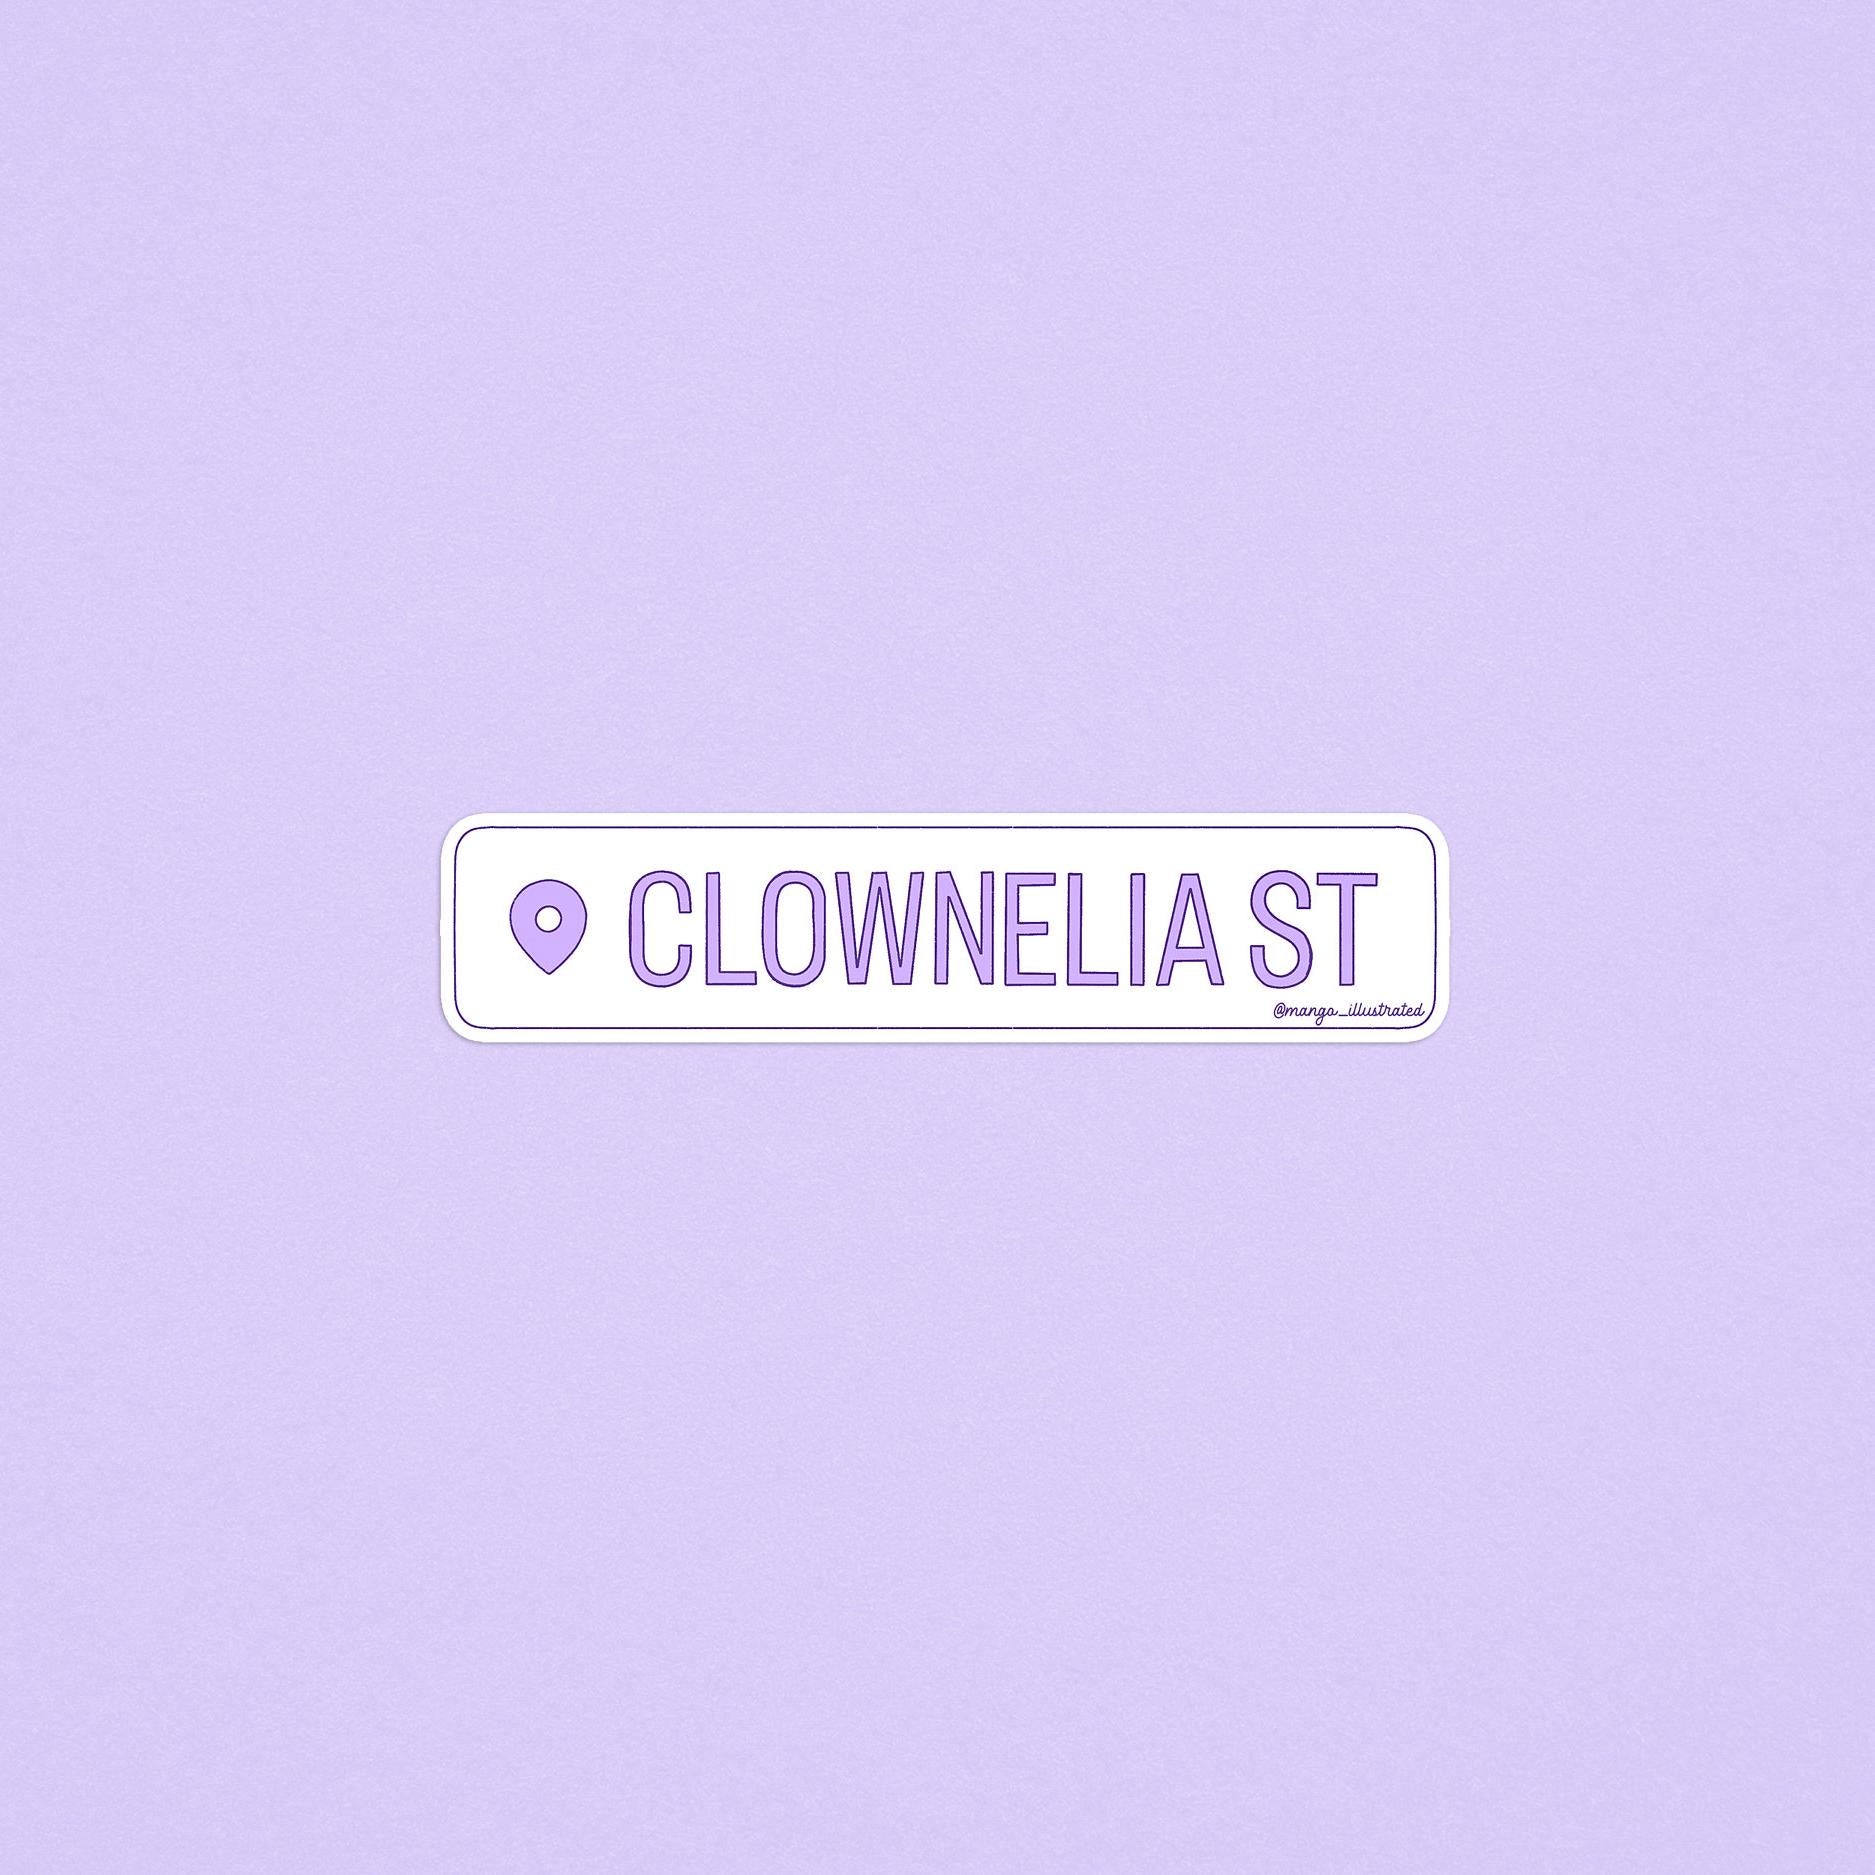 Clownelia Street location sticker, swiftie clowning sticker, eras tour sticker, swiftie sticker, gift for swiftie, swiftie gift